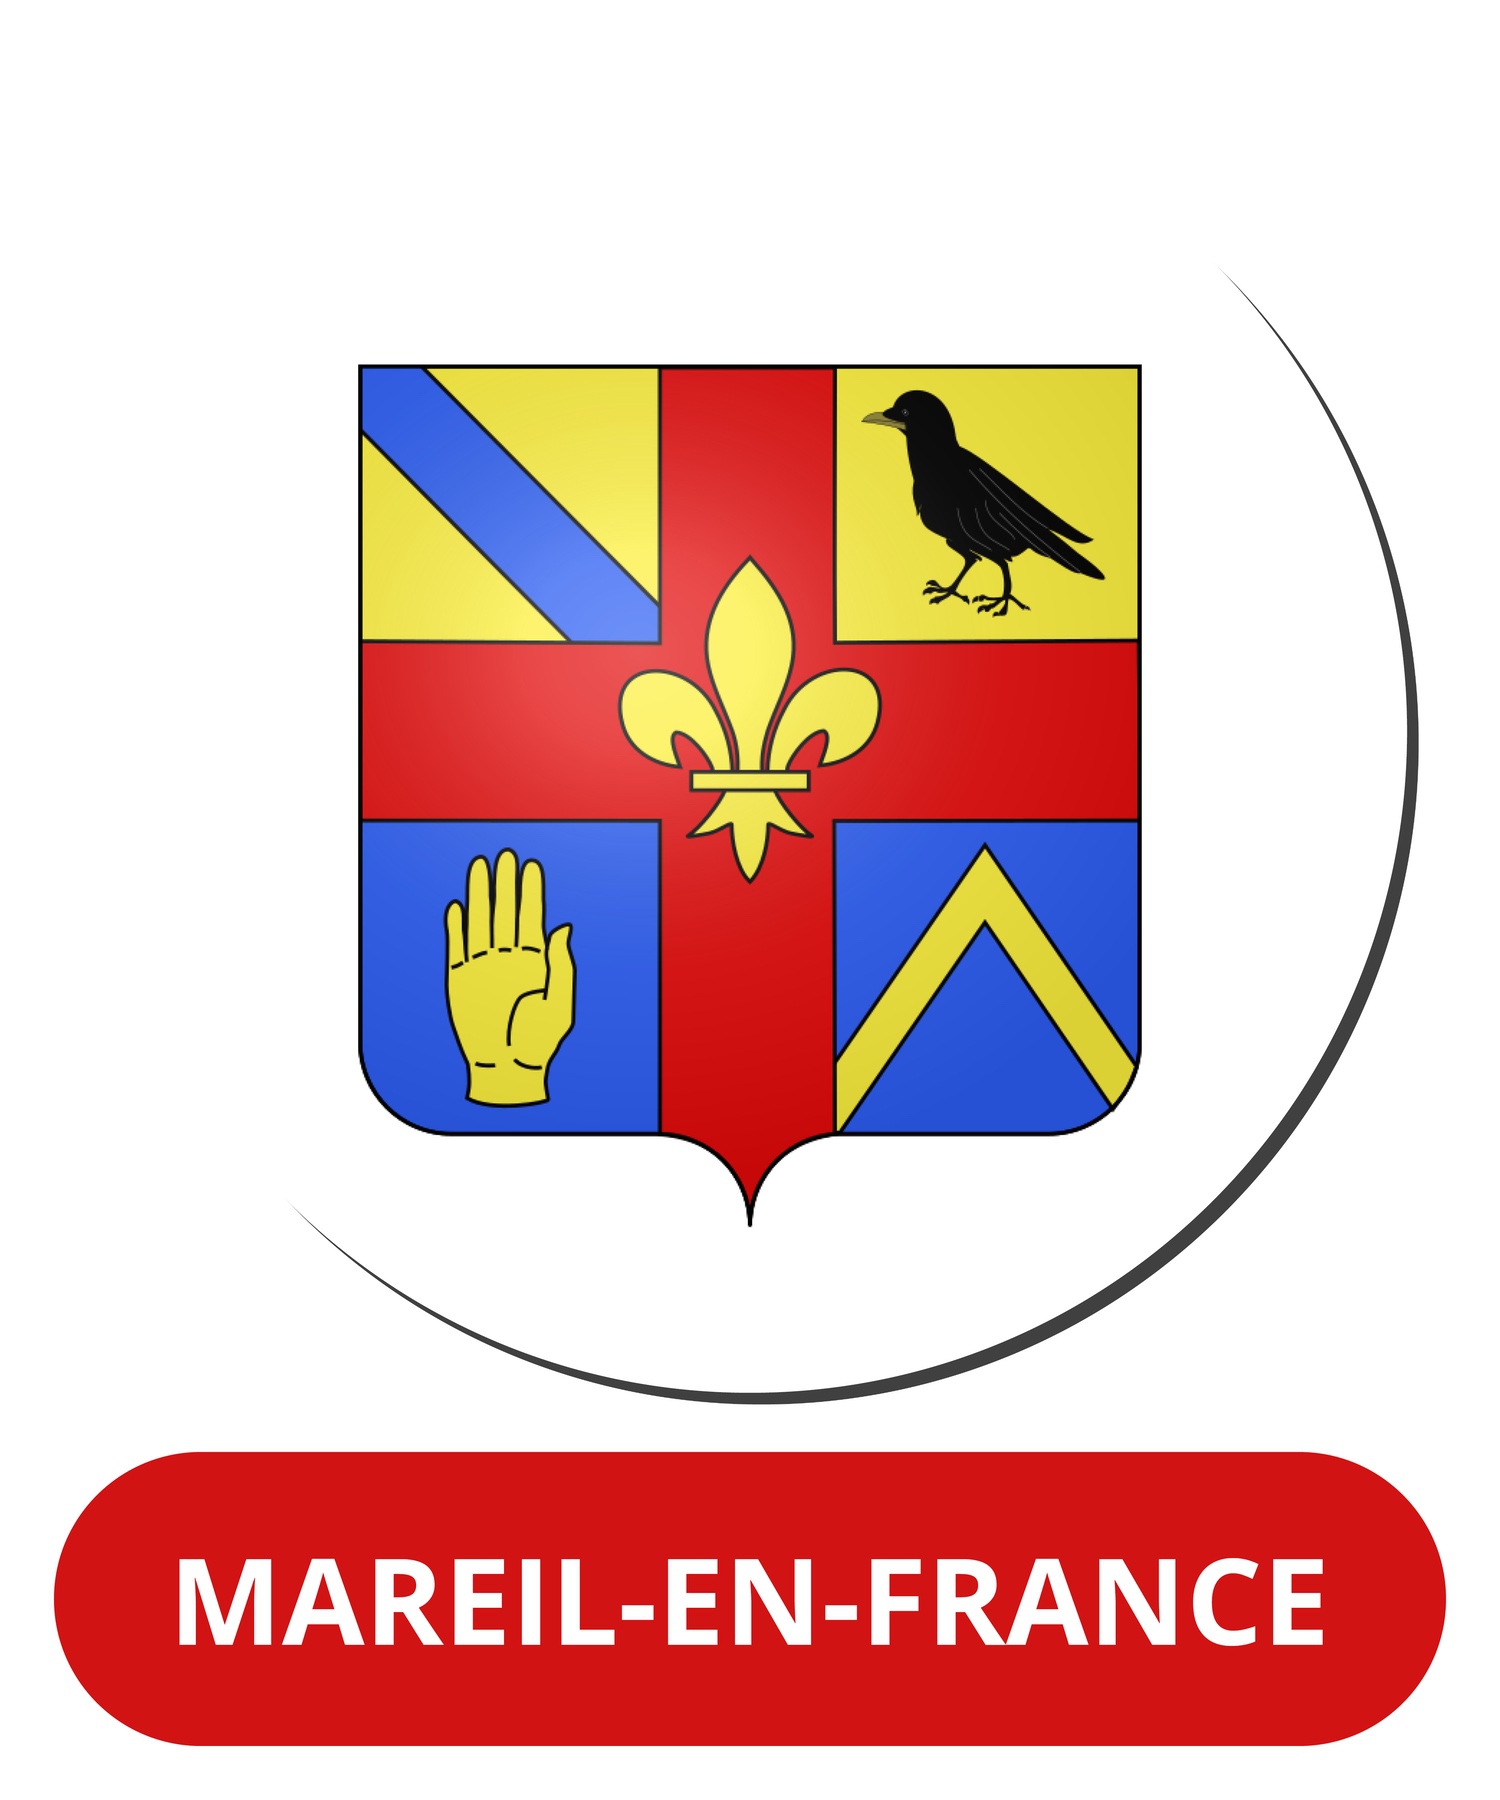 Mareil-en-France